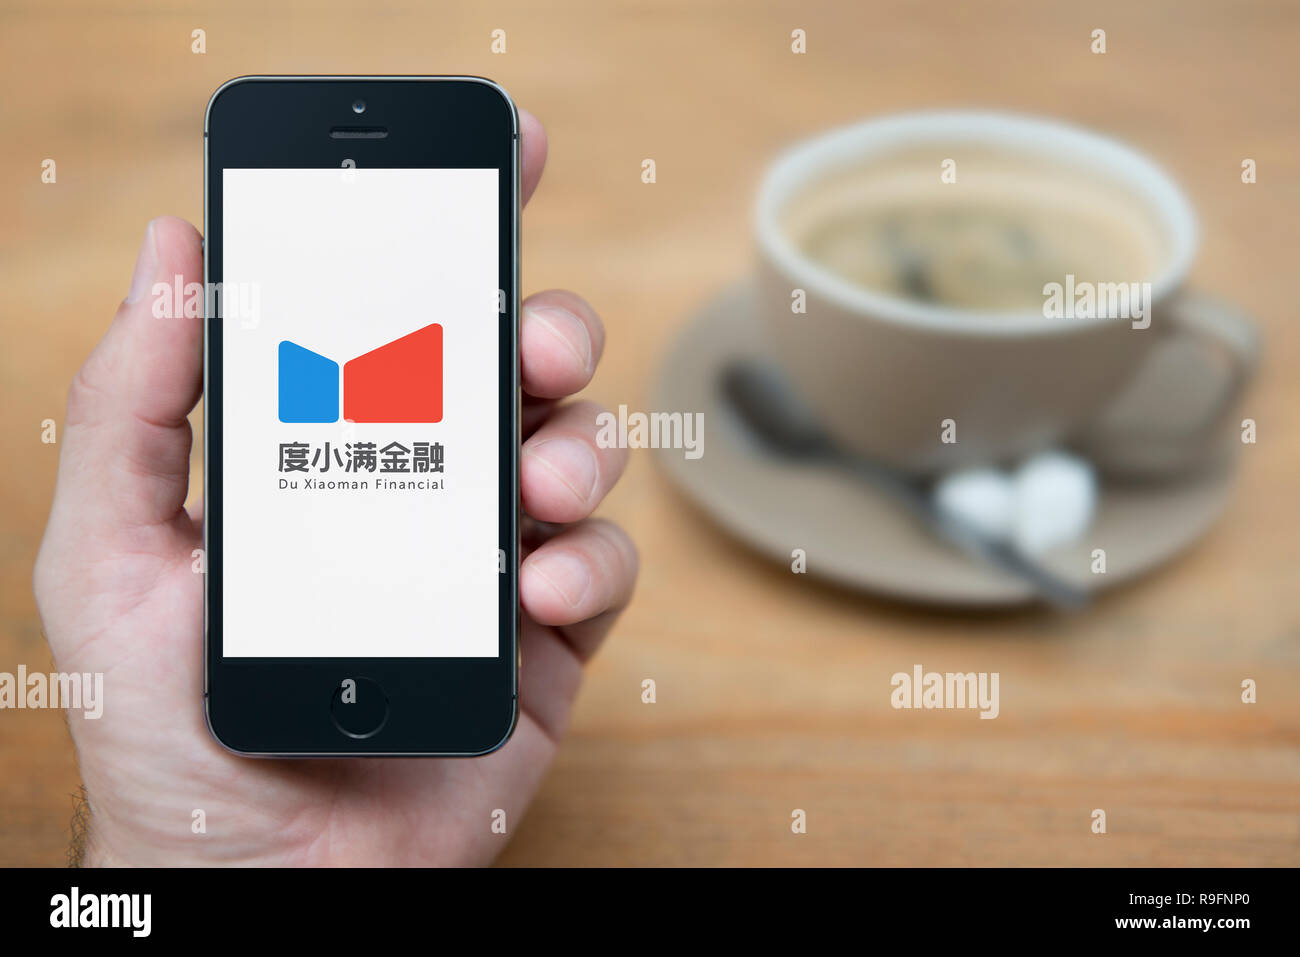 Ein Mann schaut auf seinem iPhone, das zeigt das Du Xiaoman finanzielle Logo (nur redaktionelle Nutzung). Stockfoto